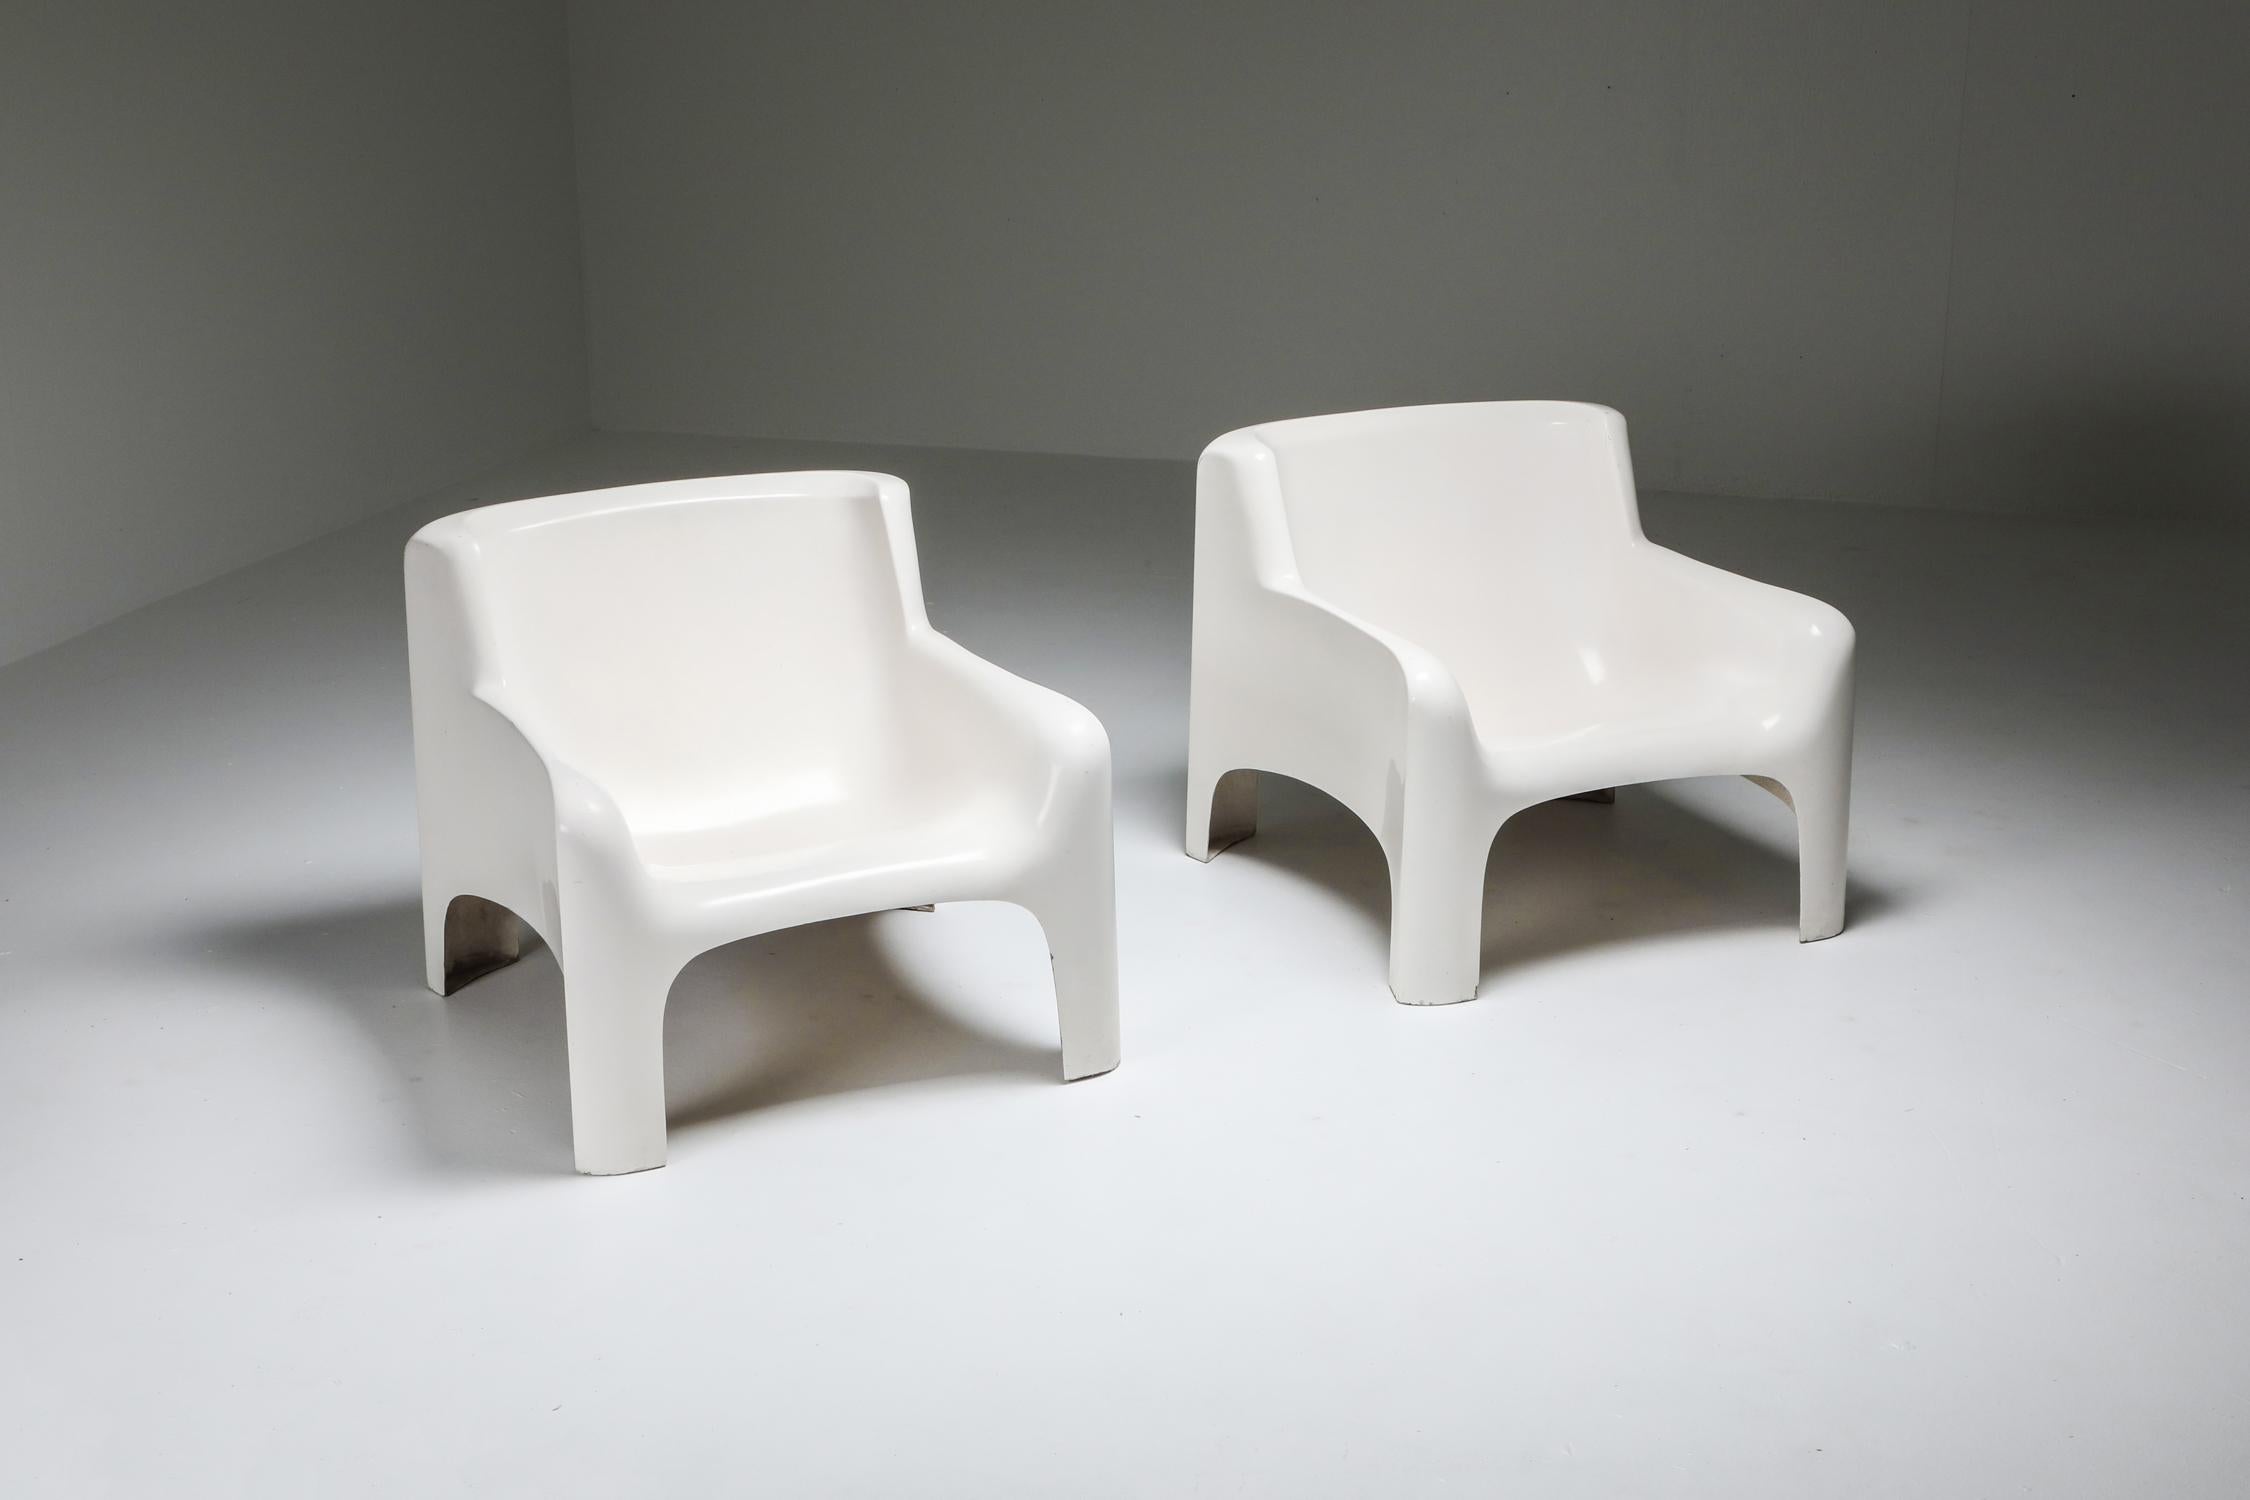 Carlo Bartali, modèle 'Solar', Arflex, Italie, 1965, quatre fauteuils disponibles.

Fibre de verre et résine polyester avec finition laquée
Ces élégantes chaises longues de Carlo Bartoli ont été fabriquées en Italie par Arflex et importées aux